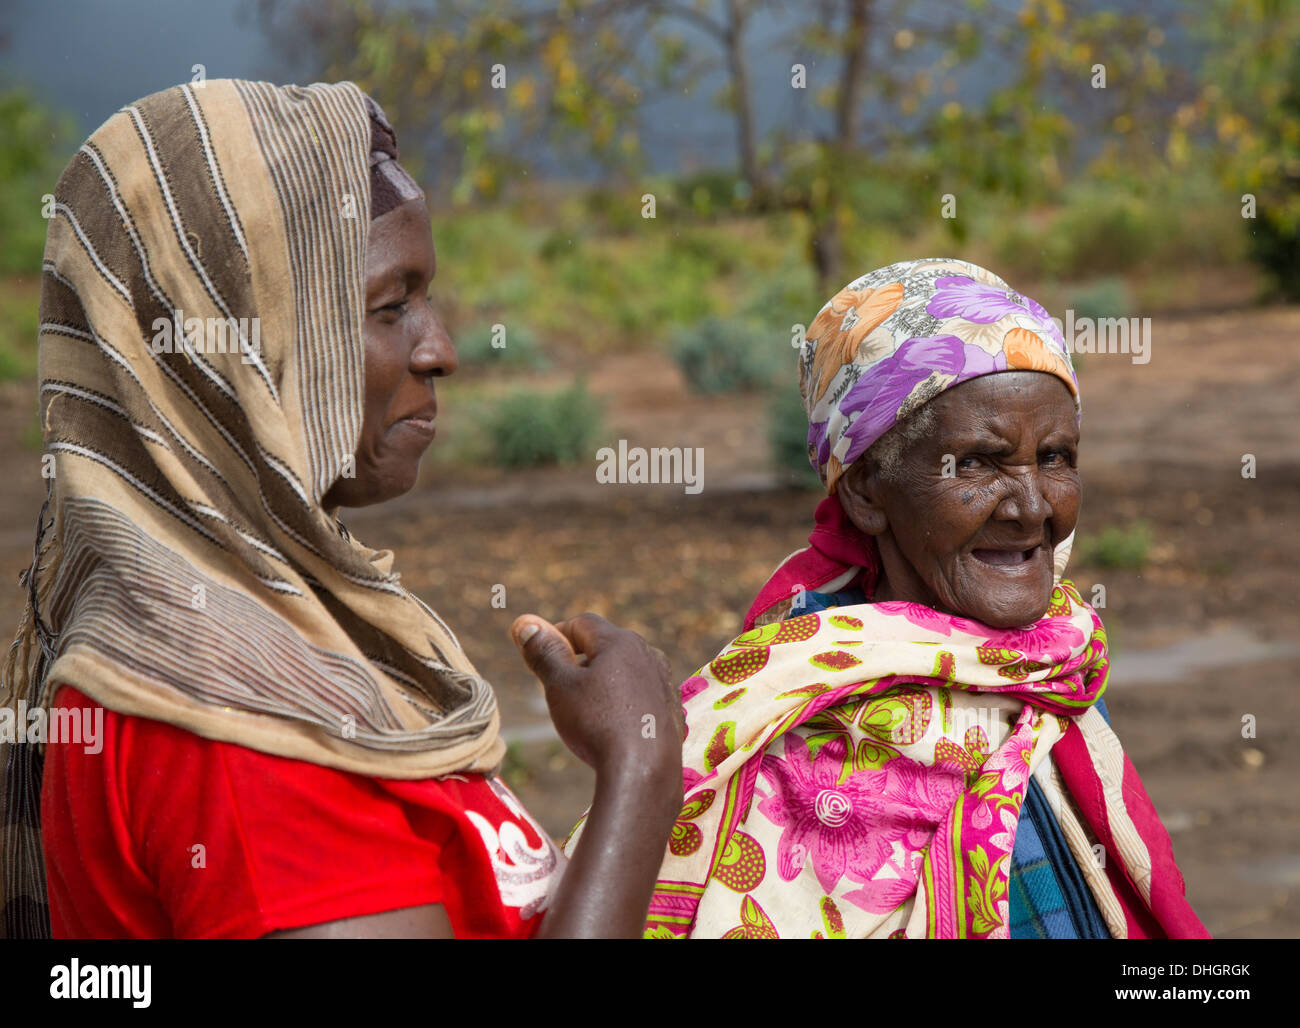 Deux femmes habillées de couleurs vives dans un village de la région du sud du Kenya Sagalla Banque D'Images